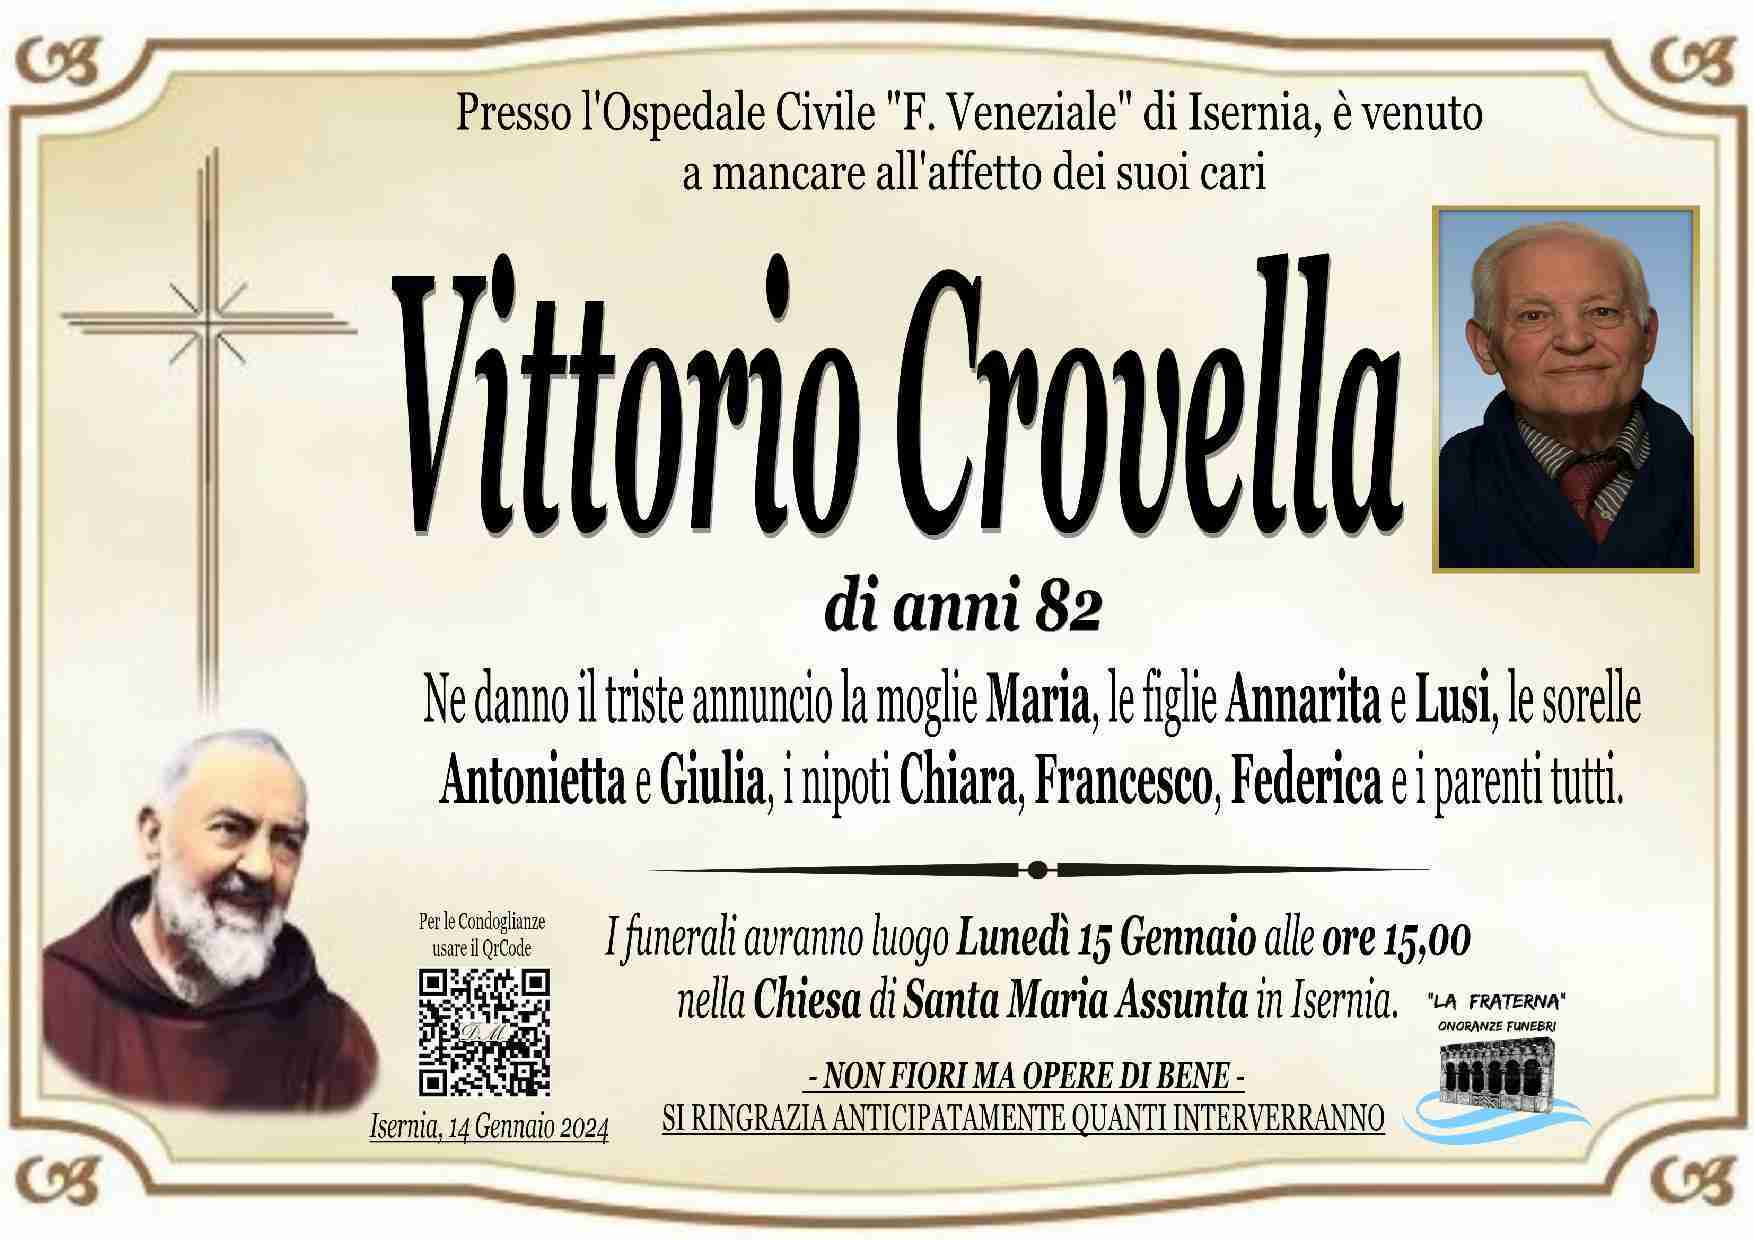 Vittorio Crovella